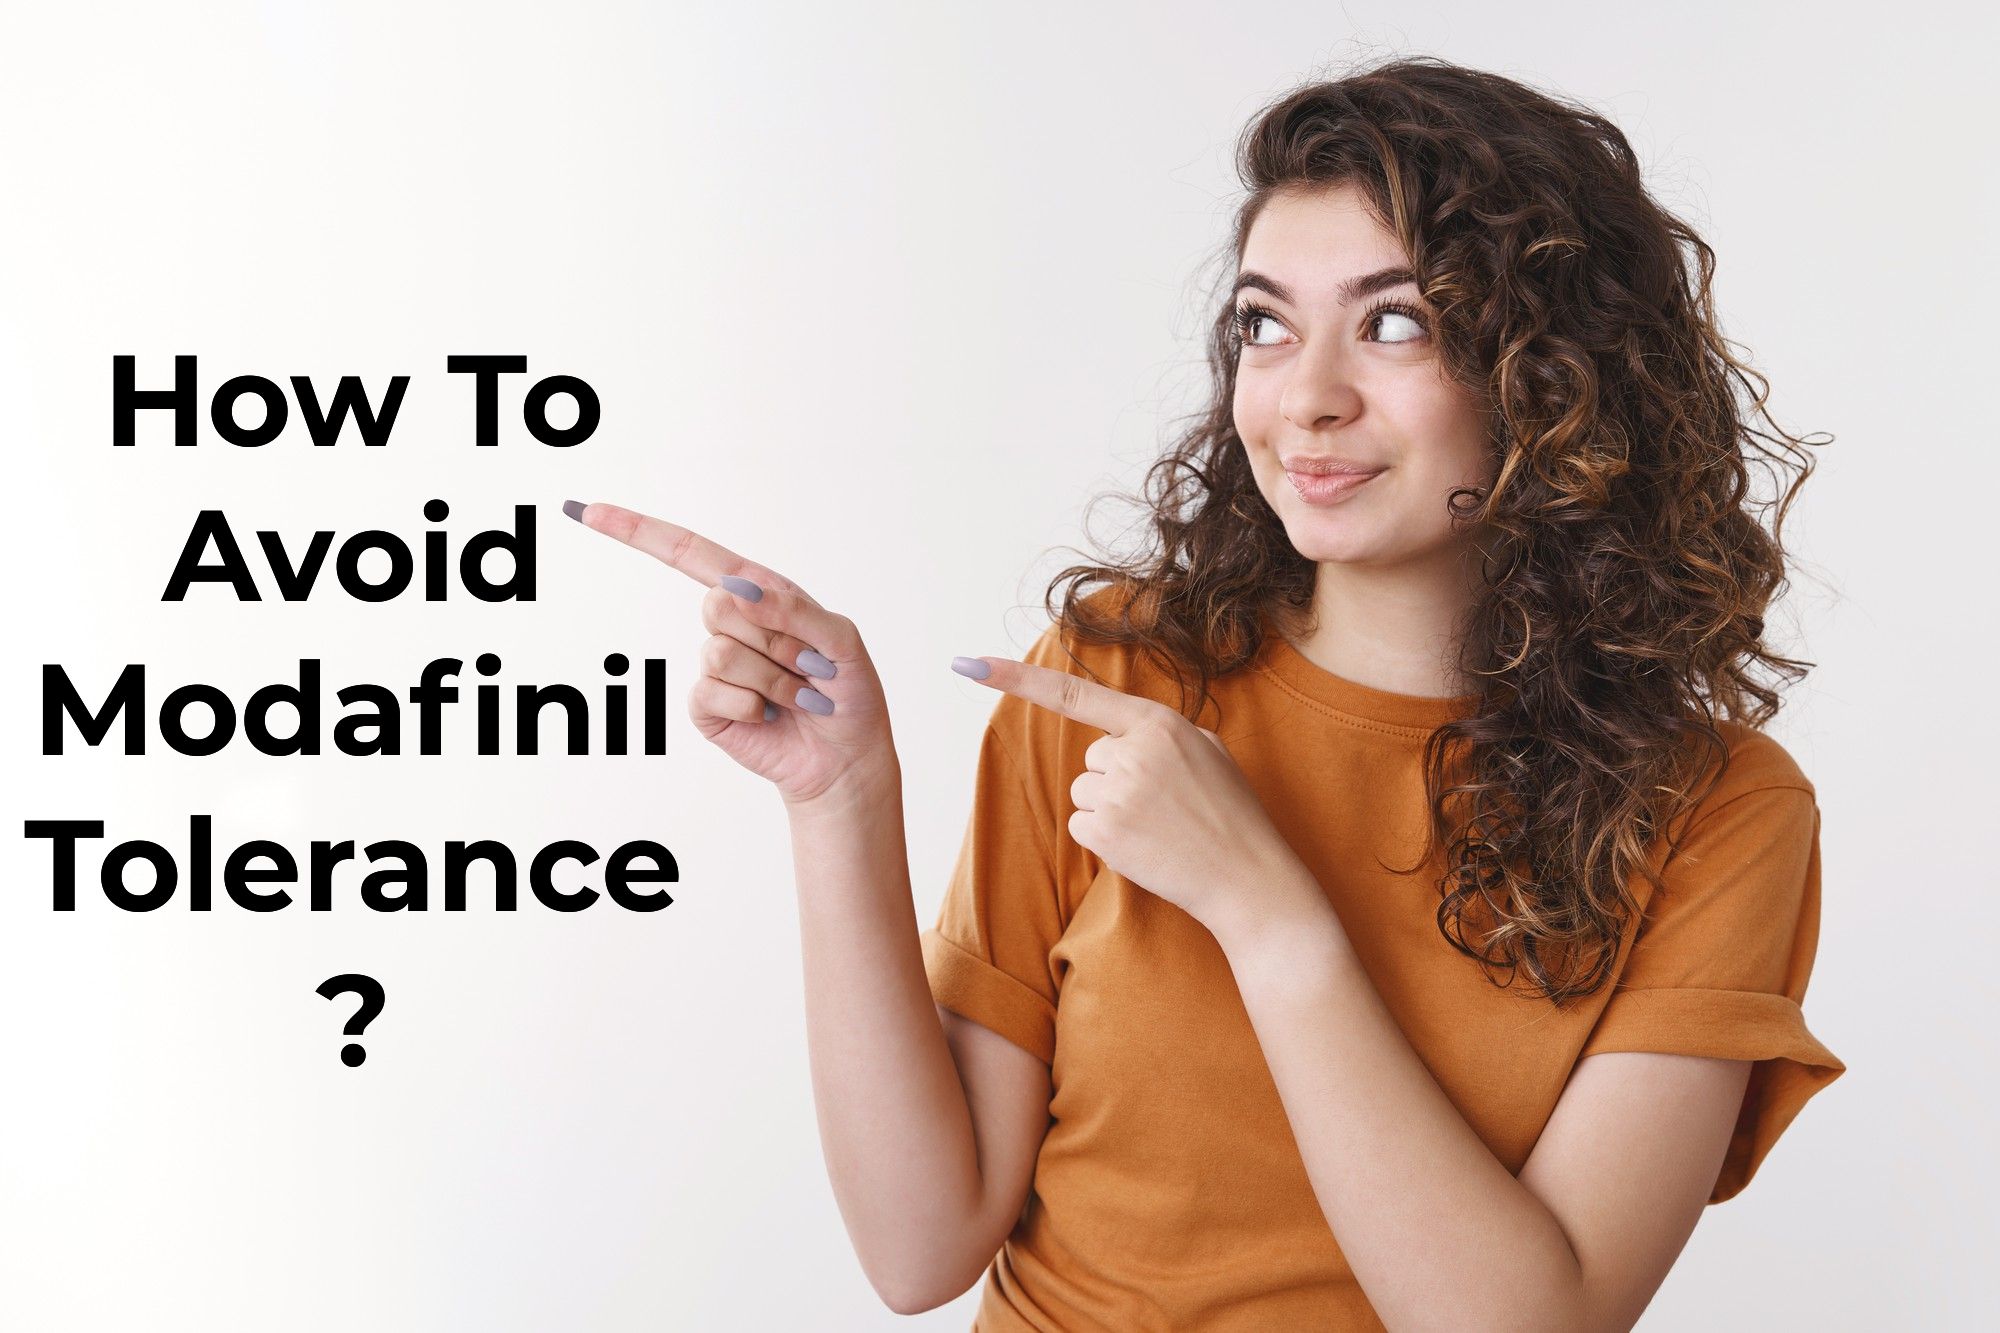 How To Avoid Modafinil Tolerance?